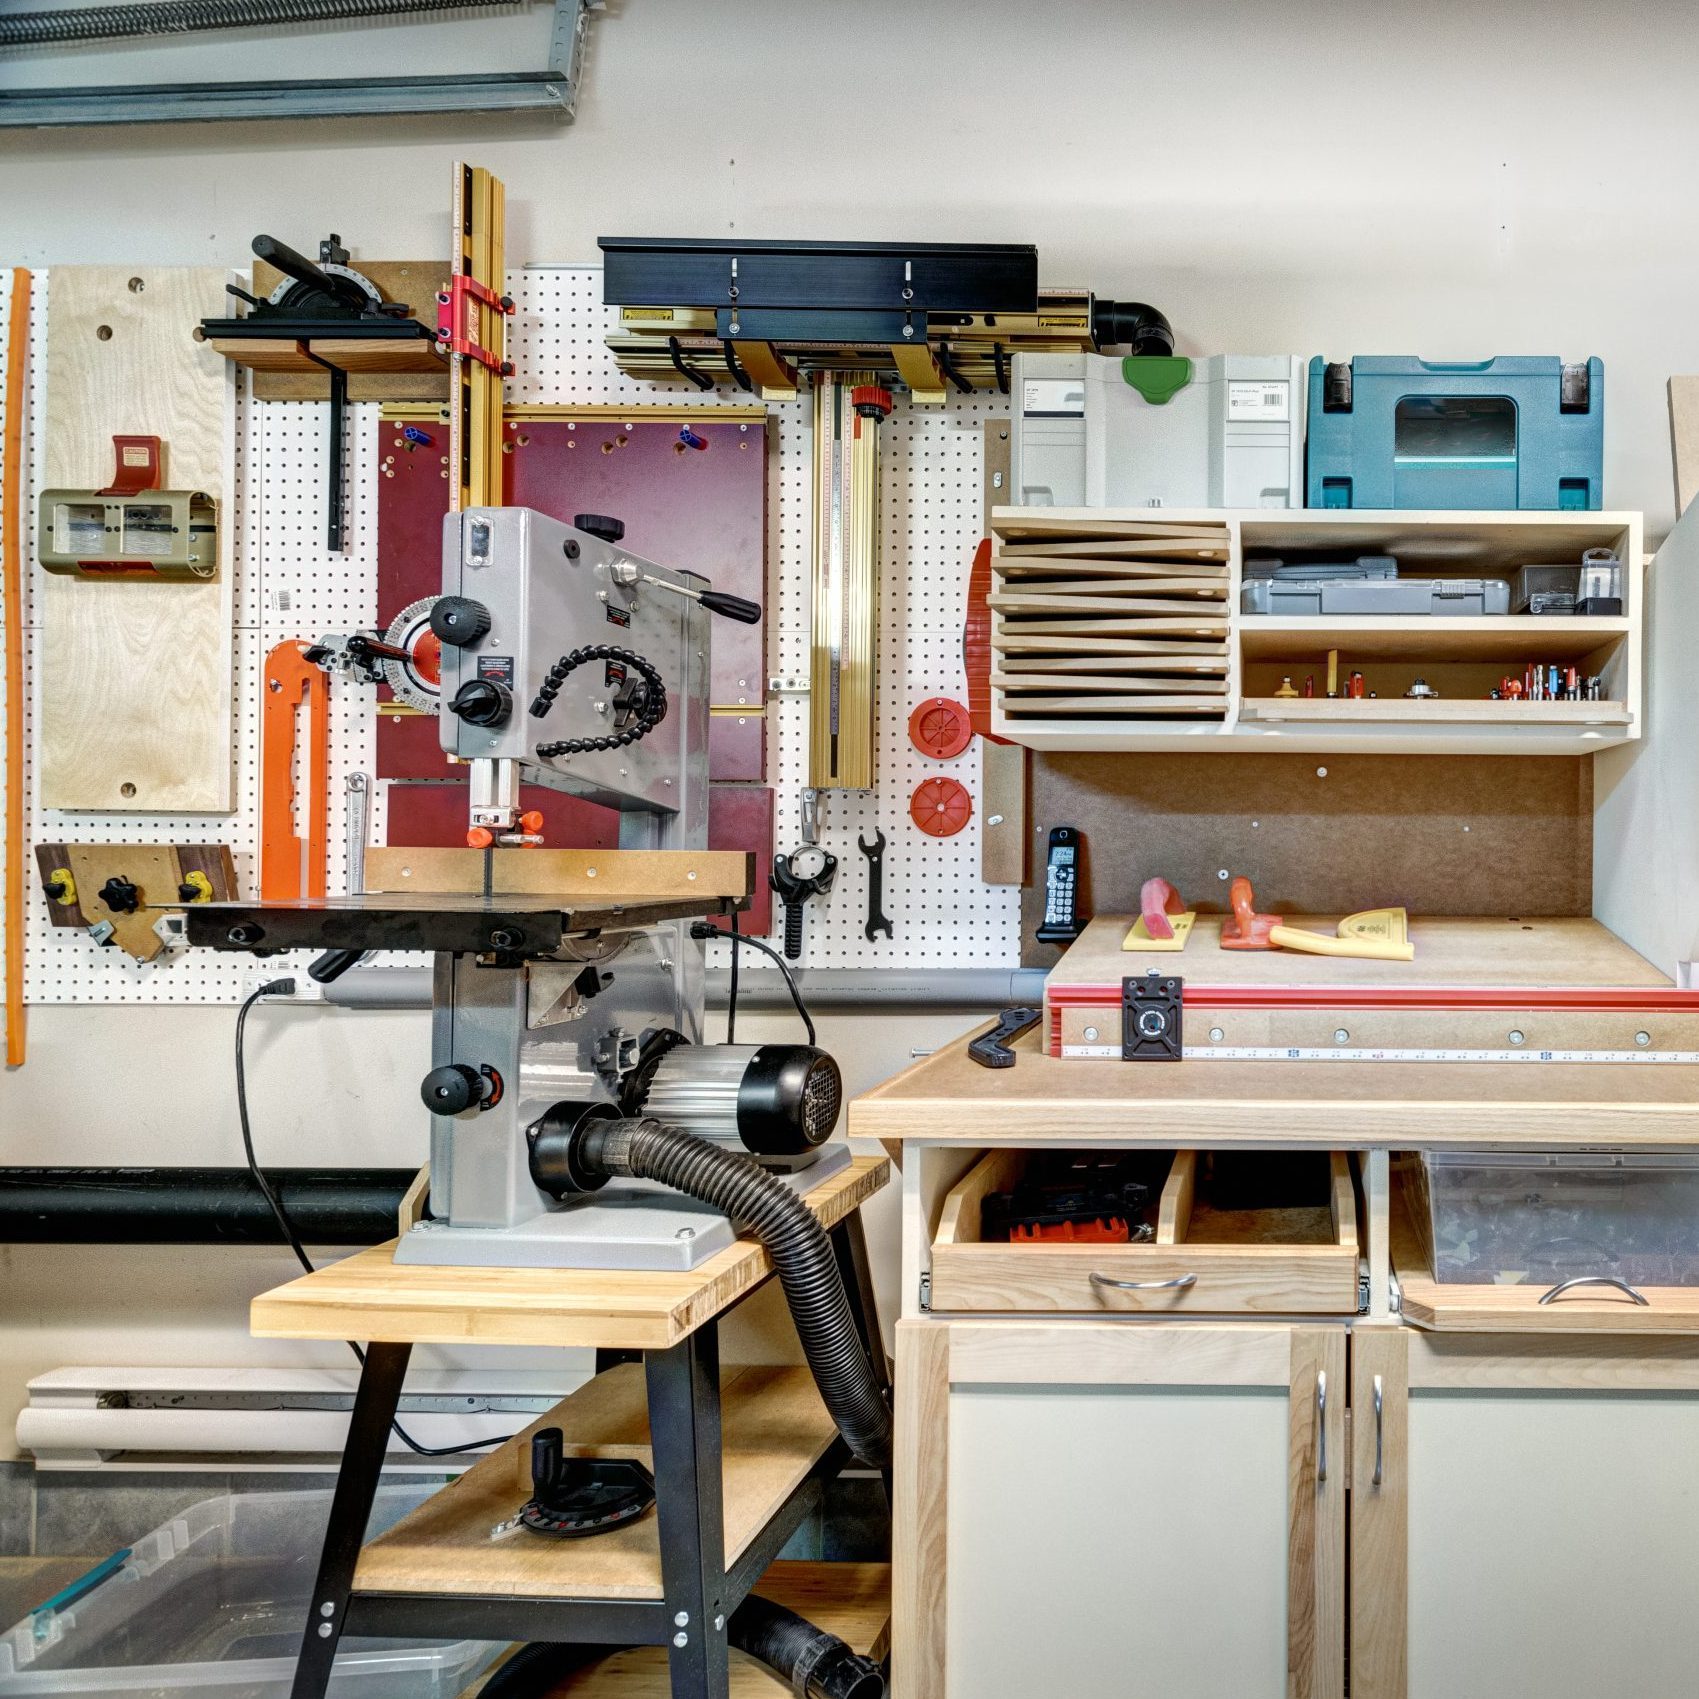 Workshop in garage in residential house